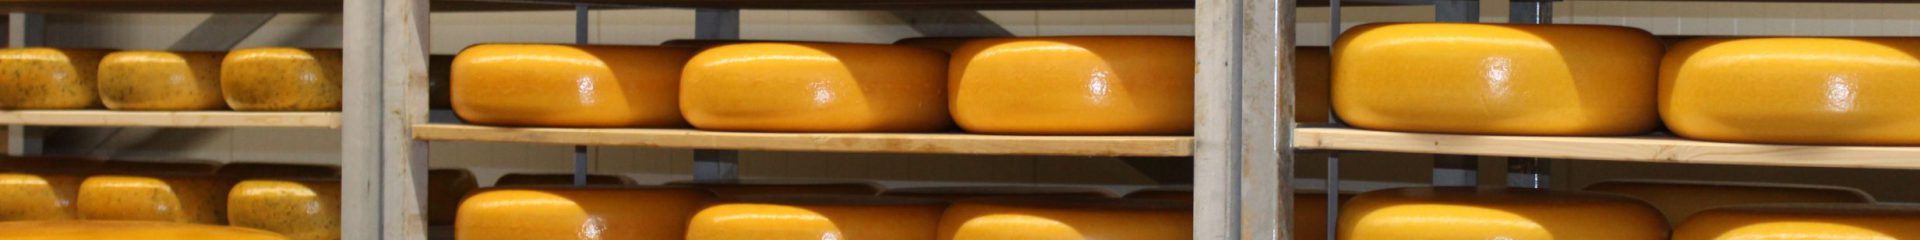 Seasonal product: Asparagus Farmhouse Cheese